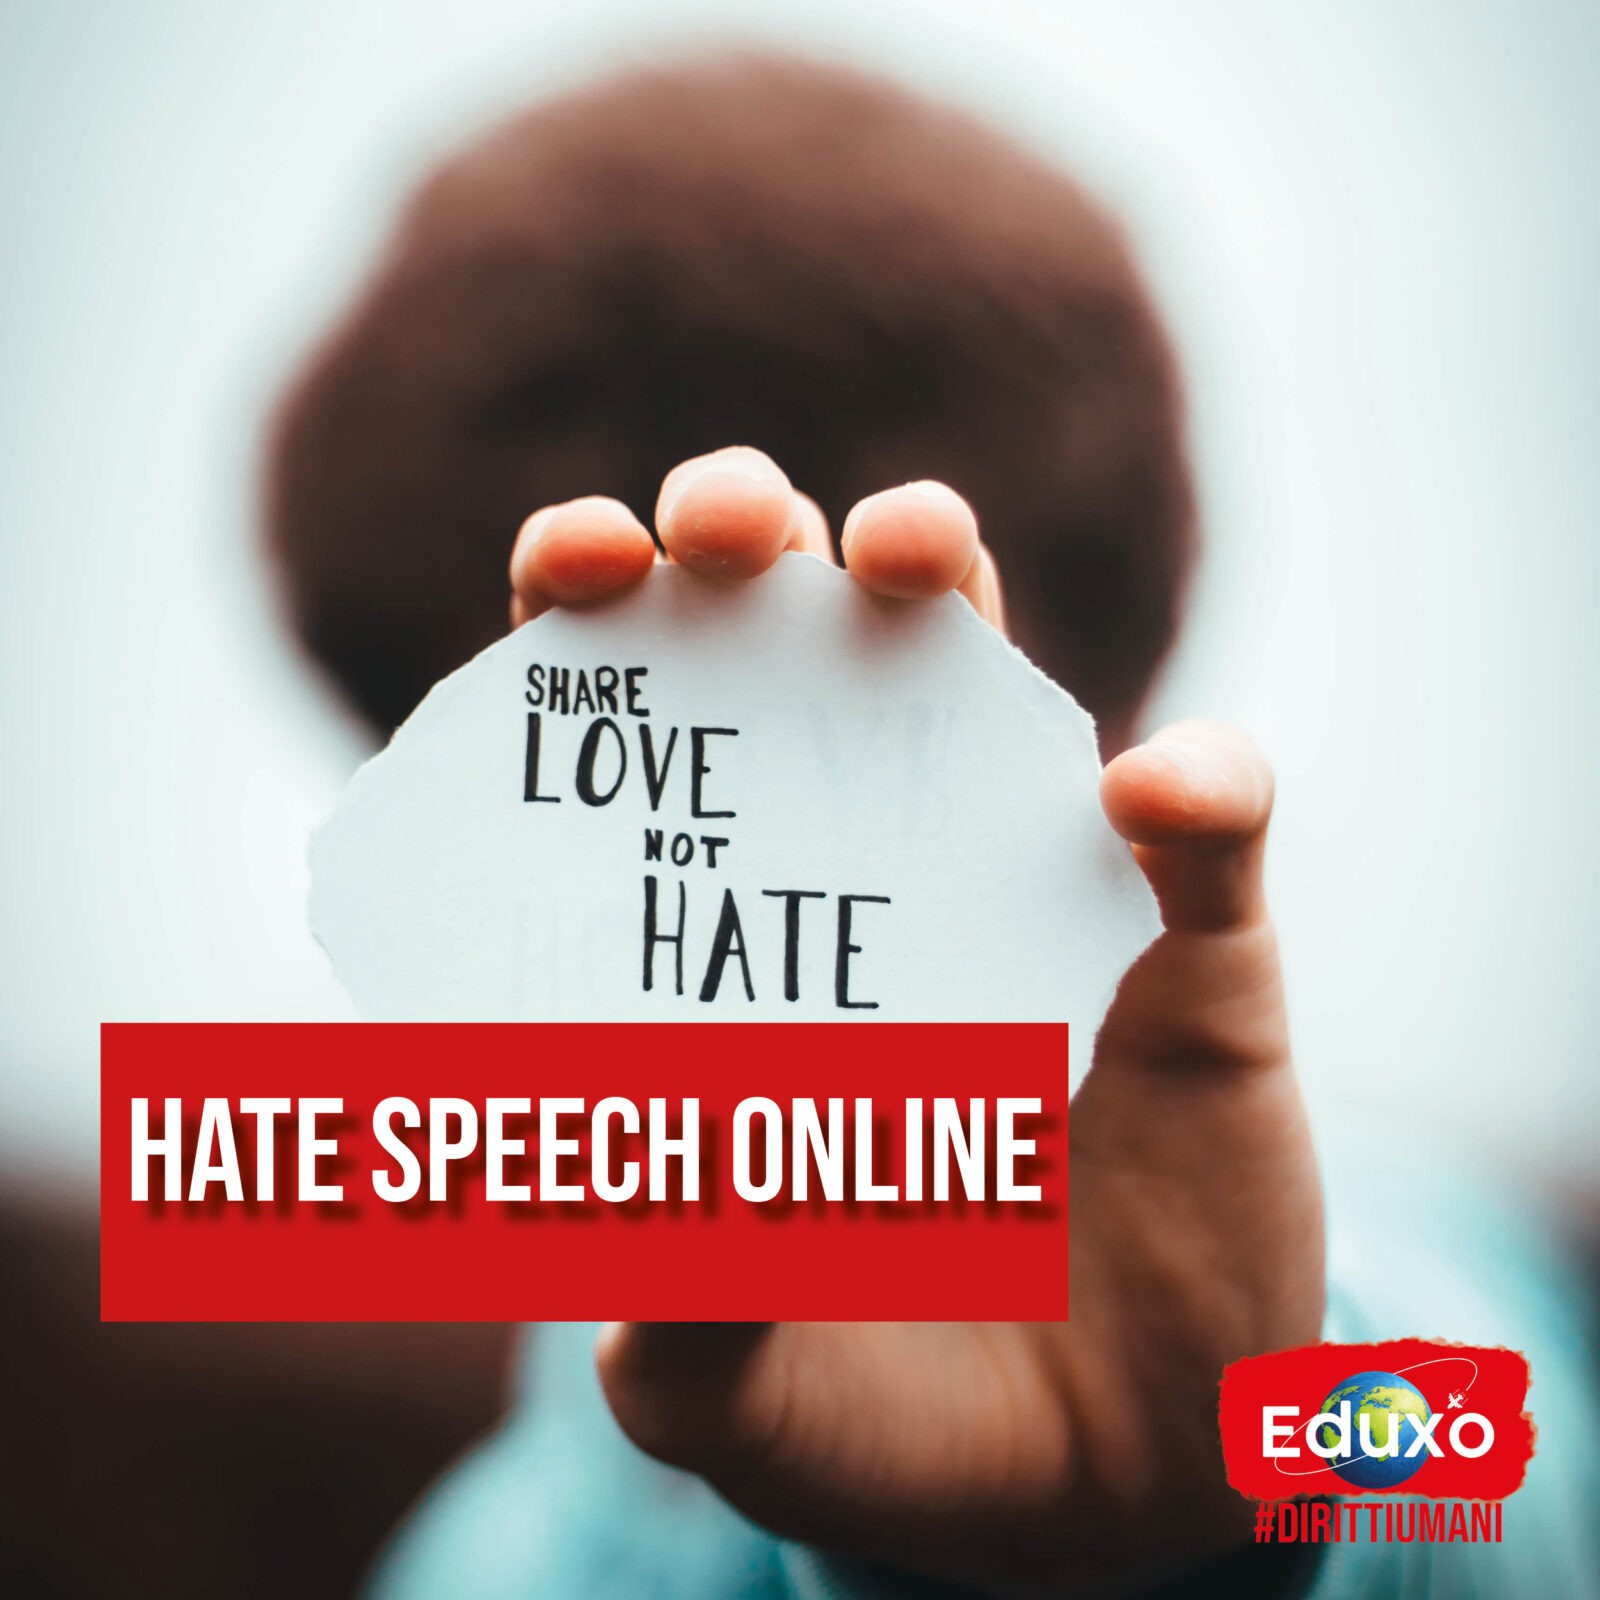 Al momento stai visualizzando Hate speech online